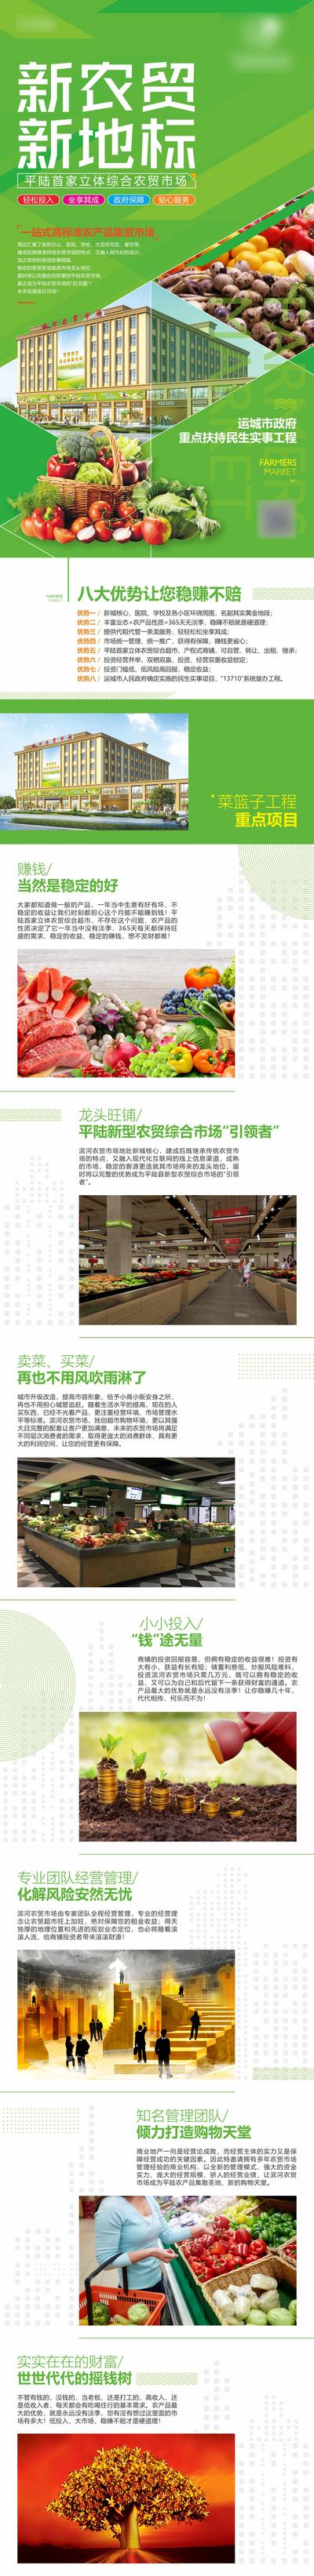 南门网 专题设计 房地产 商业 农贸市场 蔬菜 新农超 菜篮子 赚钱 投资 价值点 绿色